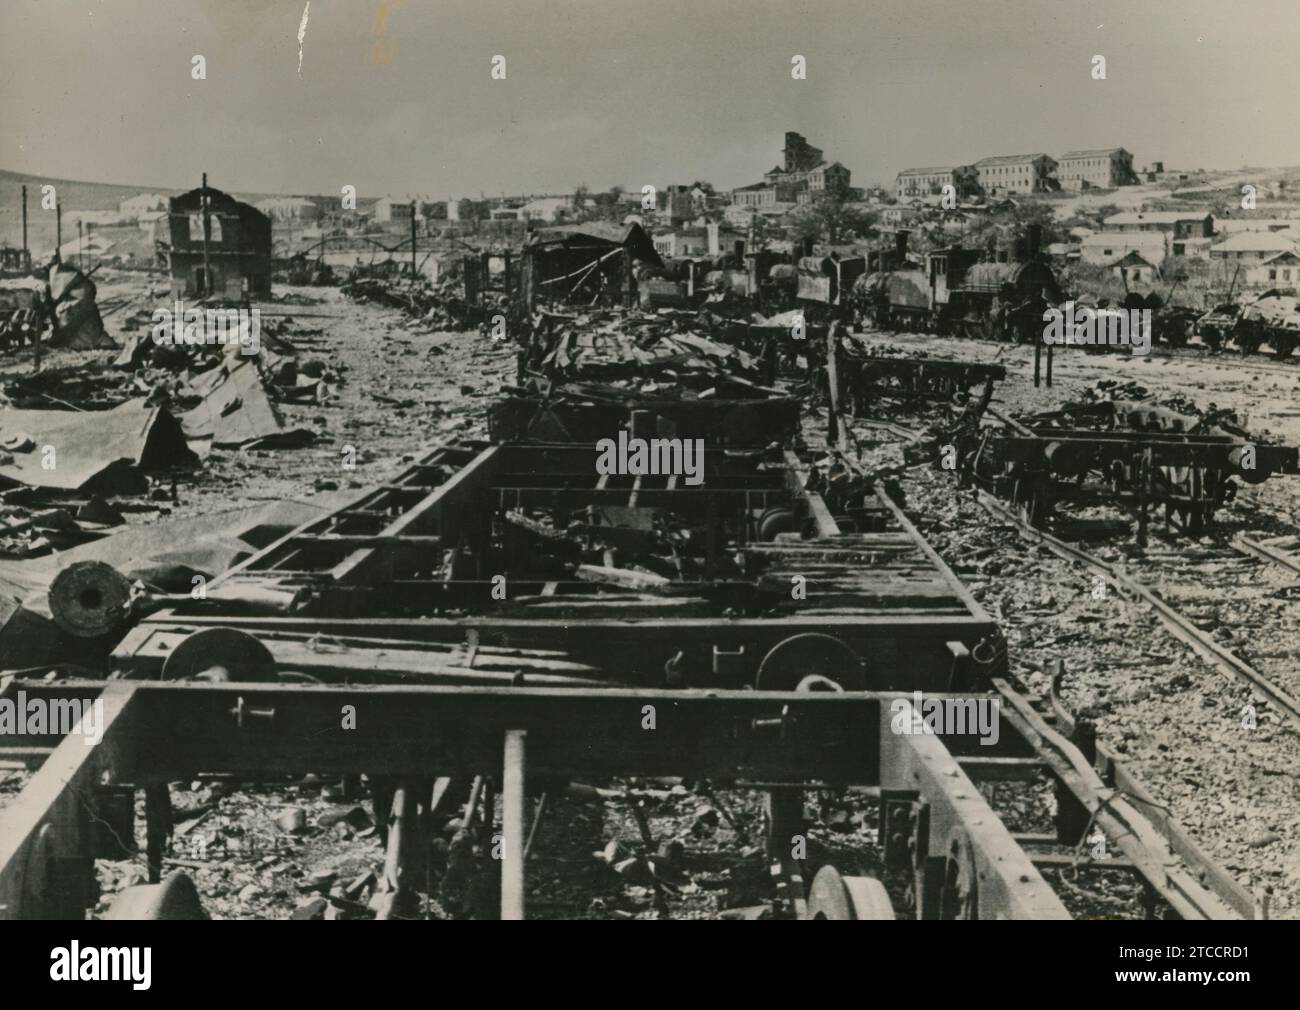 Stalingrad. November 1942. Panoramablick auf den Hauptbahnhof, vollständig zerstört durch deutsche Luftangriffe. Quelle: Album/Archivo ABC Stockfoto